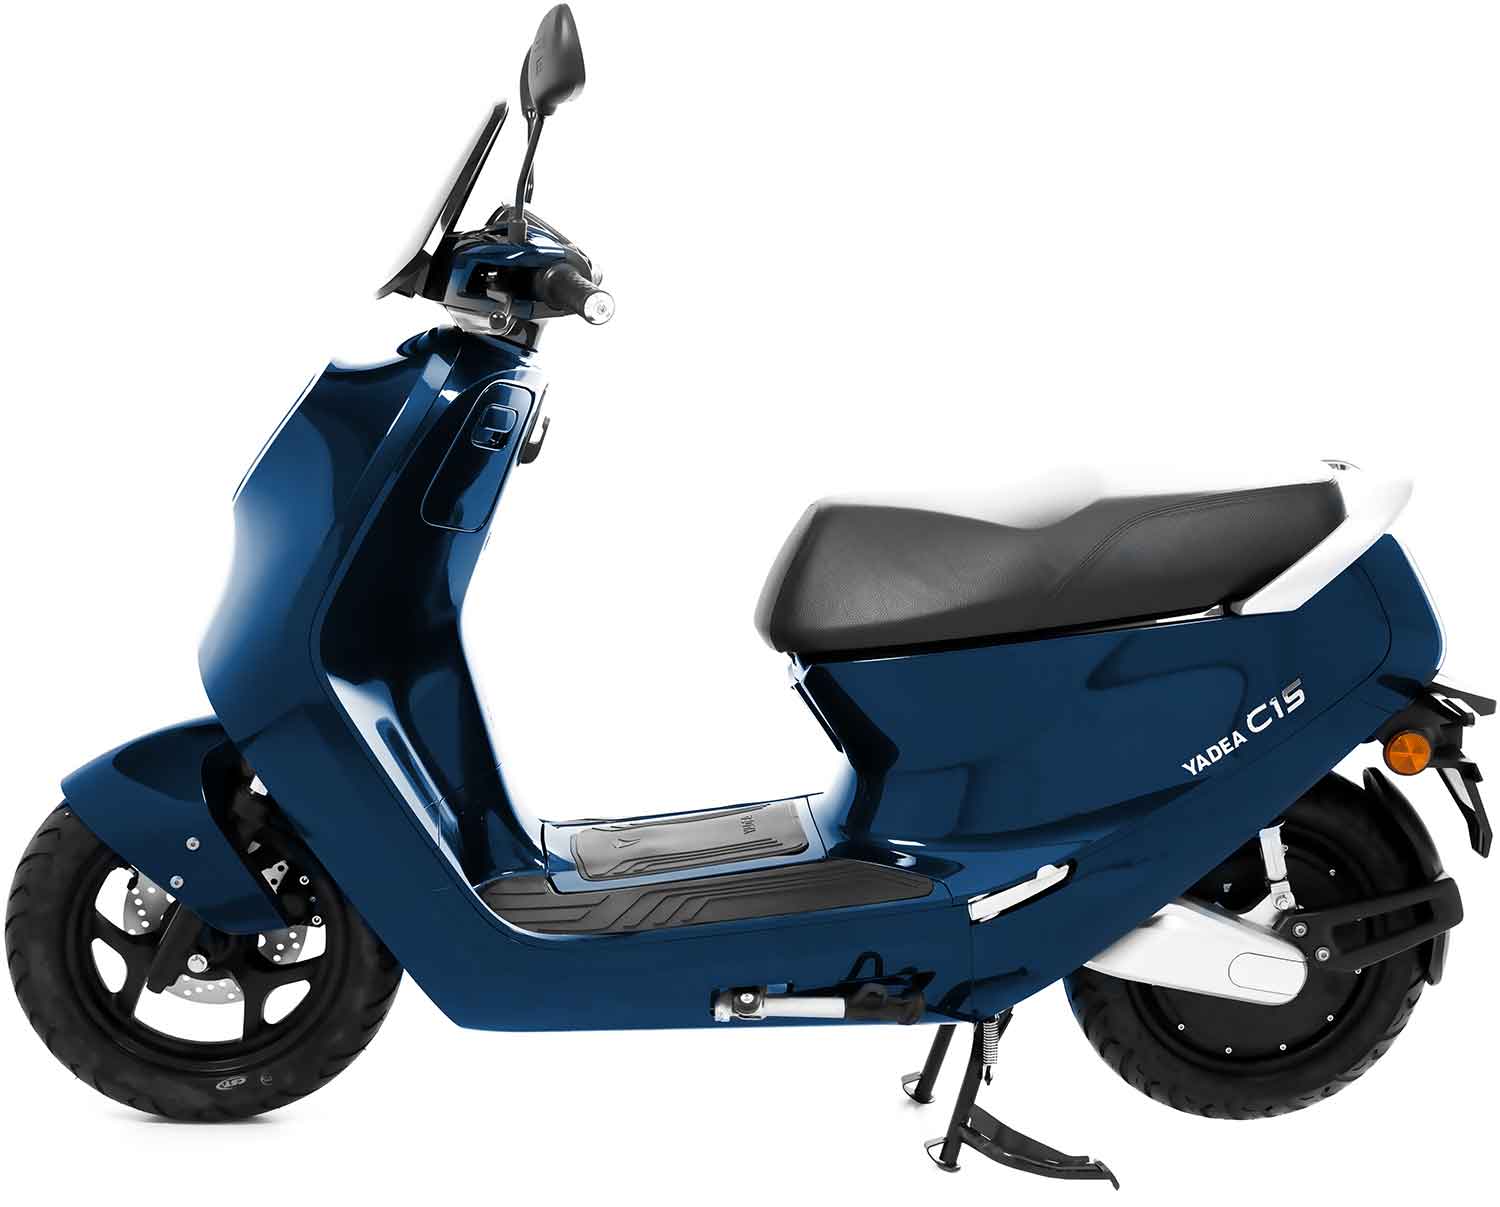 Yadea C1S E-Scooter